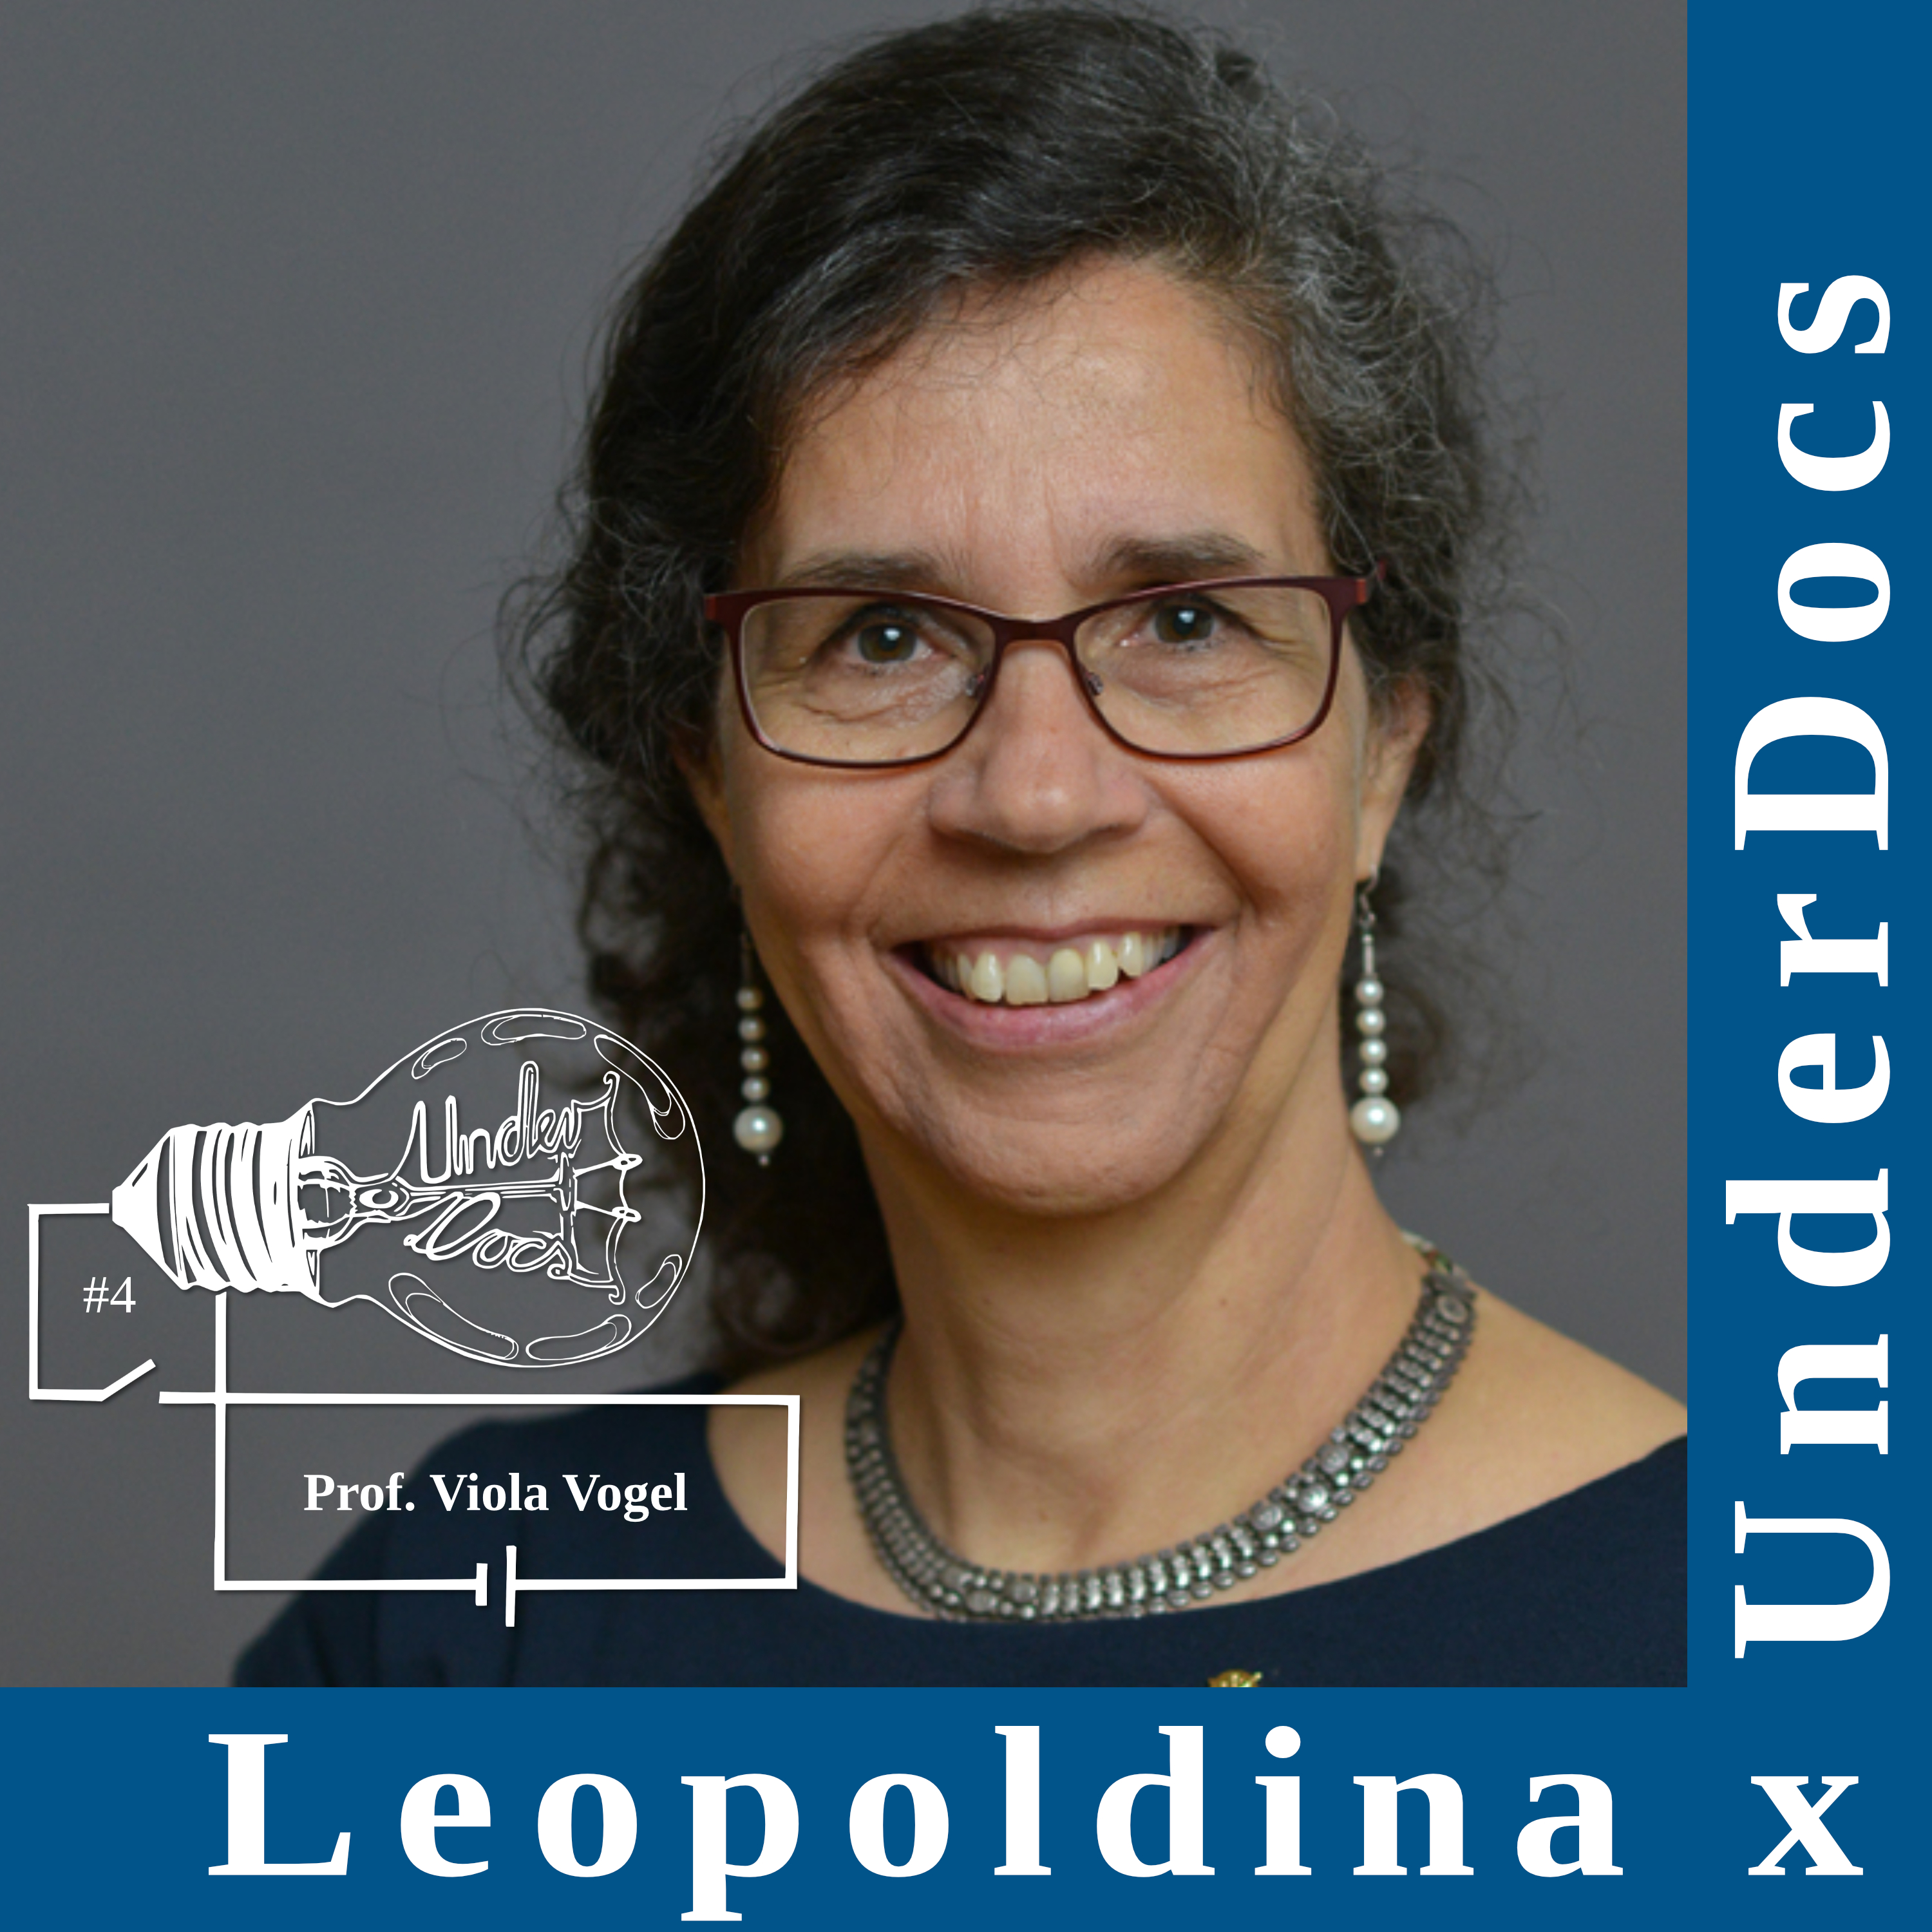 Leopoldina x UnderDocs: Prof. Viola Vogel über ihre Faszination Wissenschaft